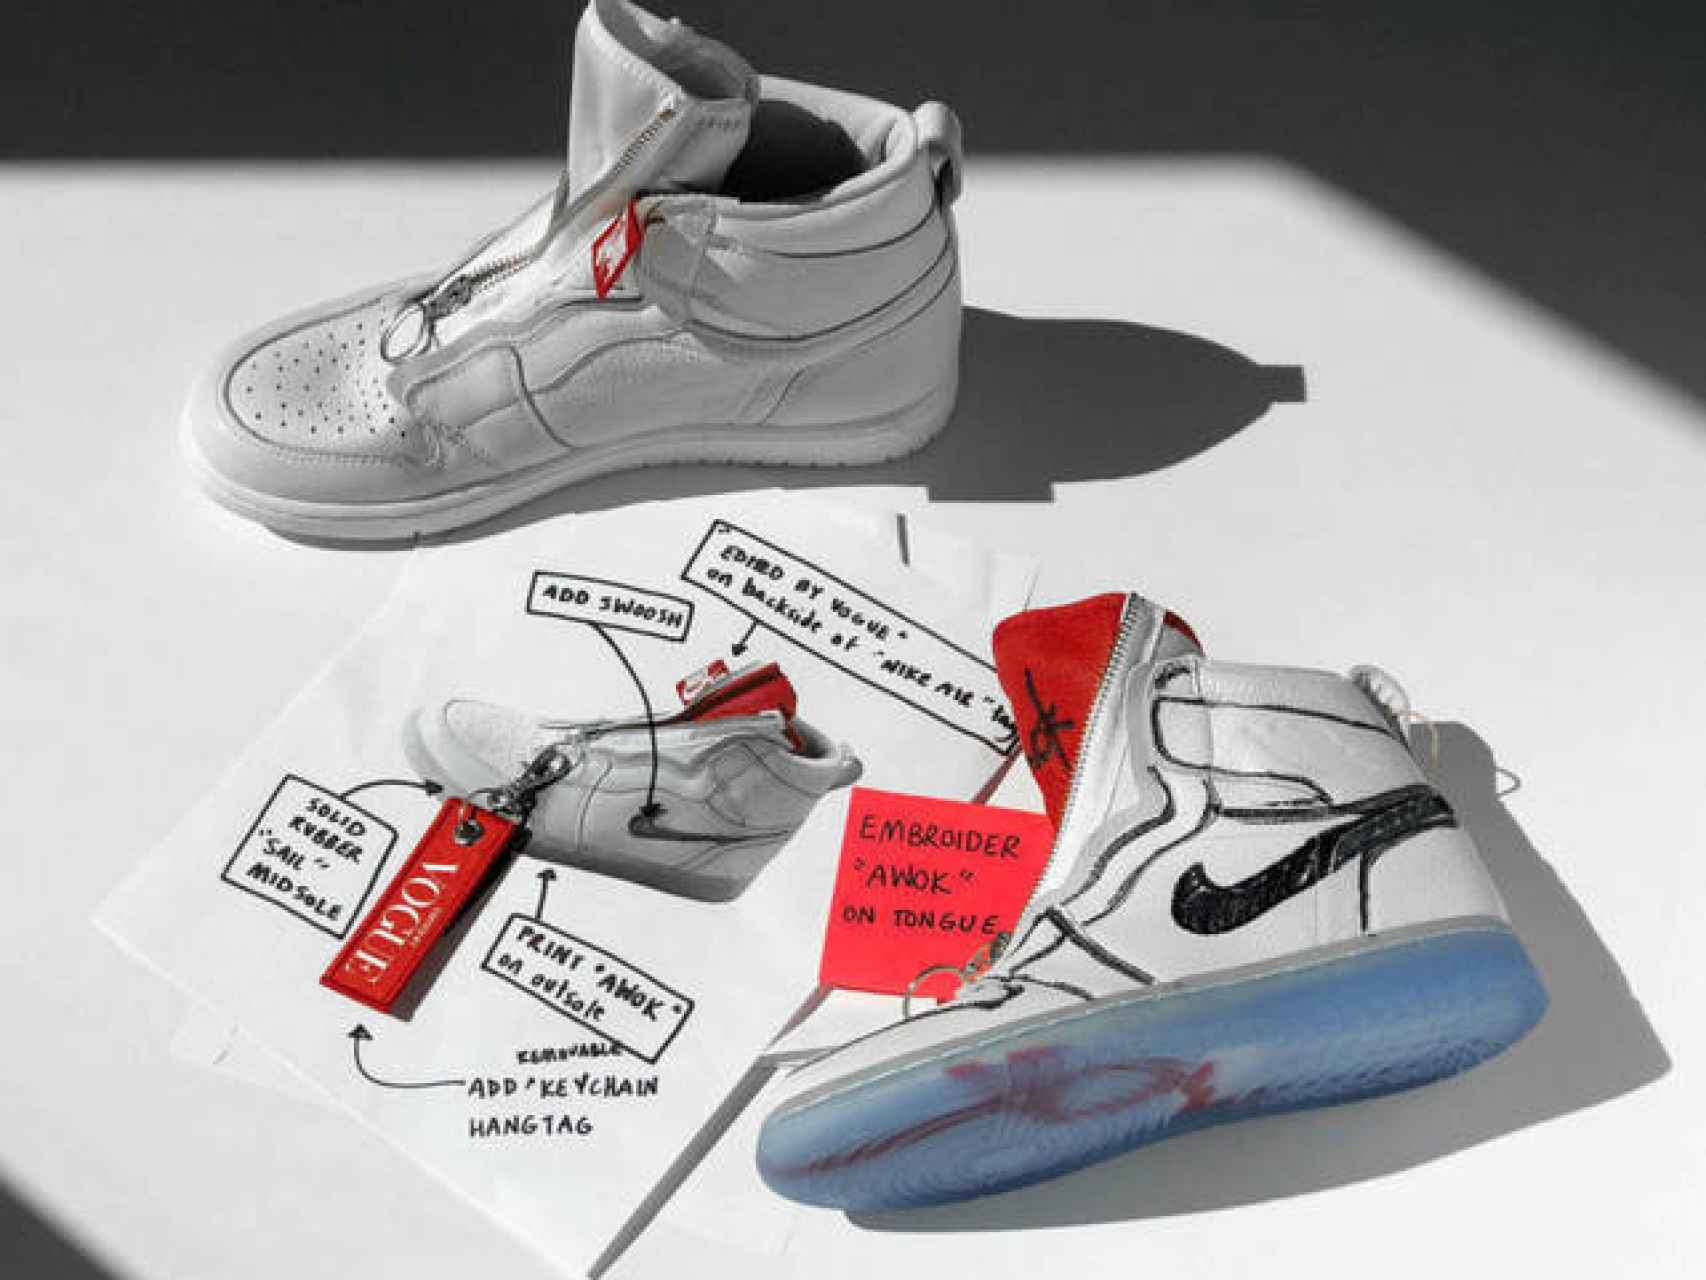 Modelo de zapatillas 'Air Jordan 1' de 'Nike', diseñado por Anna Wintour.